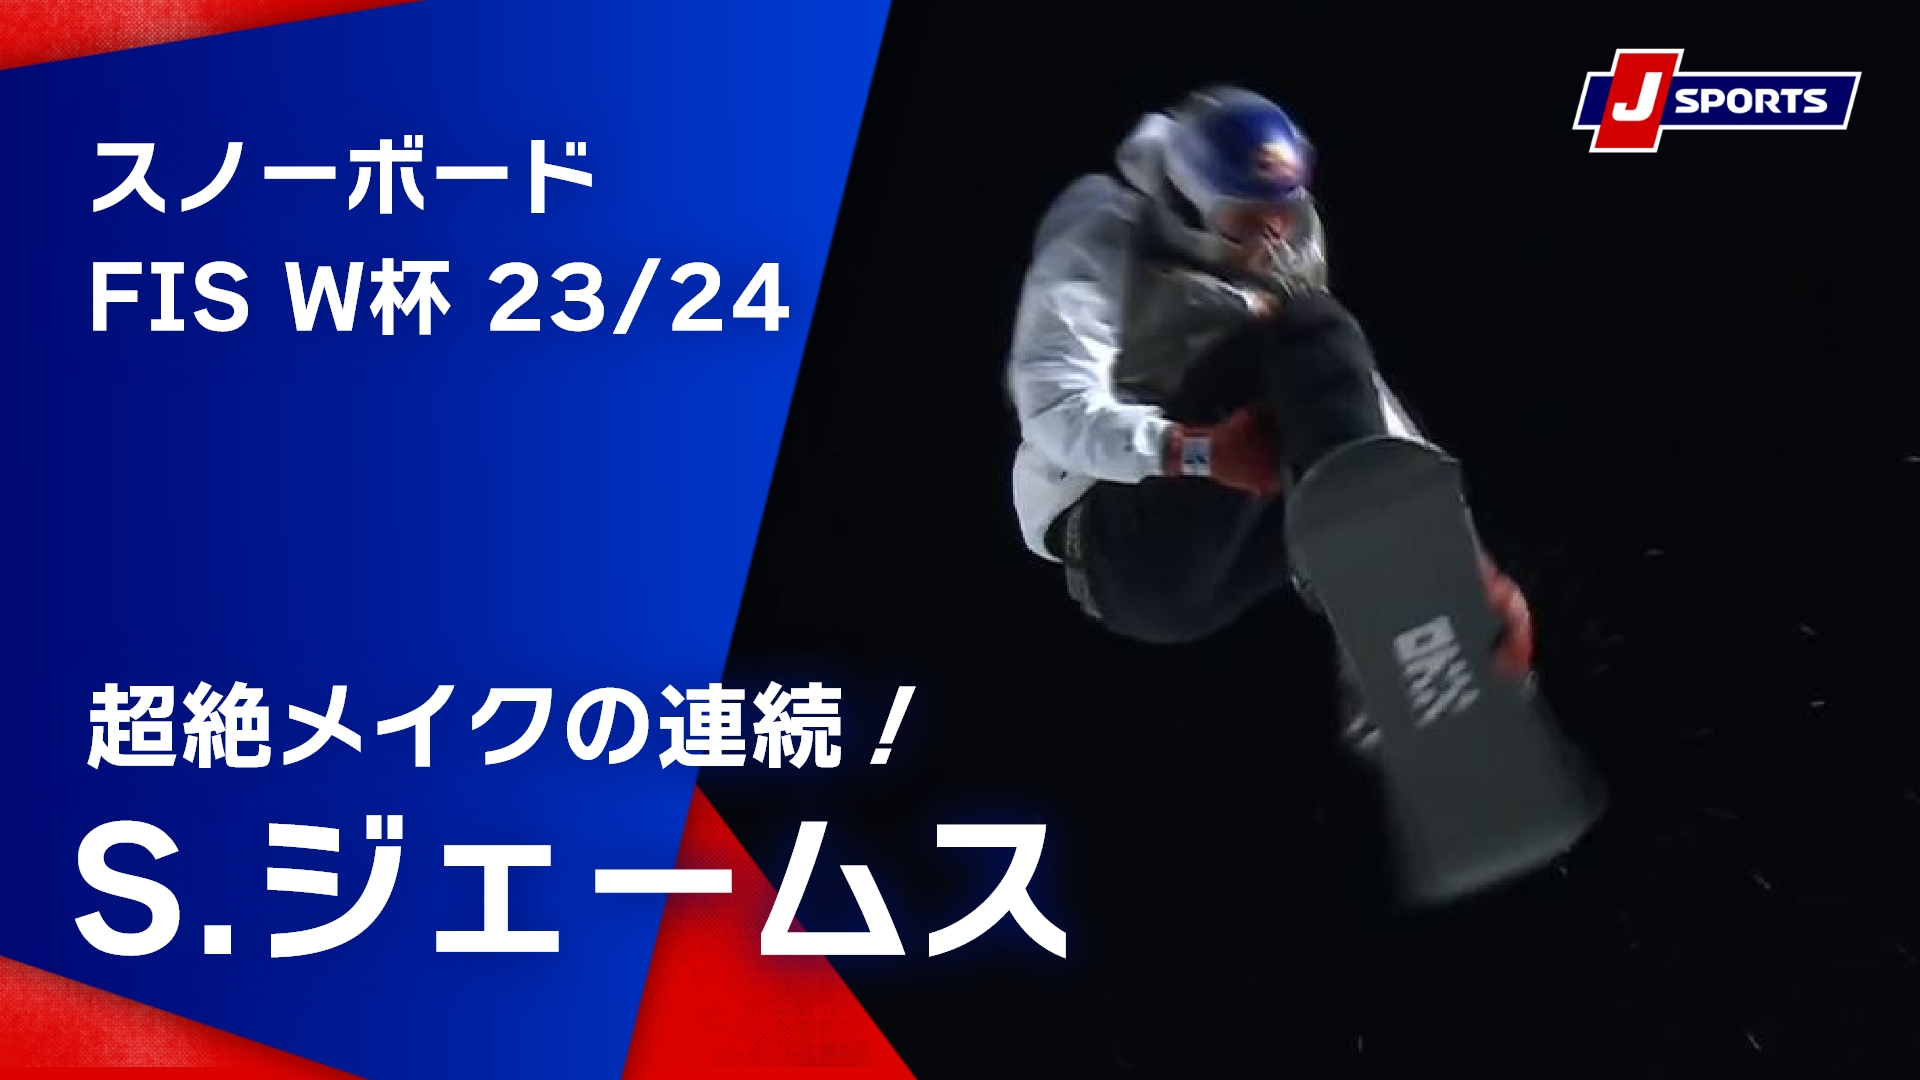 【超絶メイクの連続！S.ジェームス】スノーボード FIS ワールドカップ 2023_24 男子 ハーフパイプラークス大会 (1_20)#snowboard